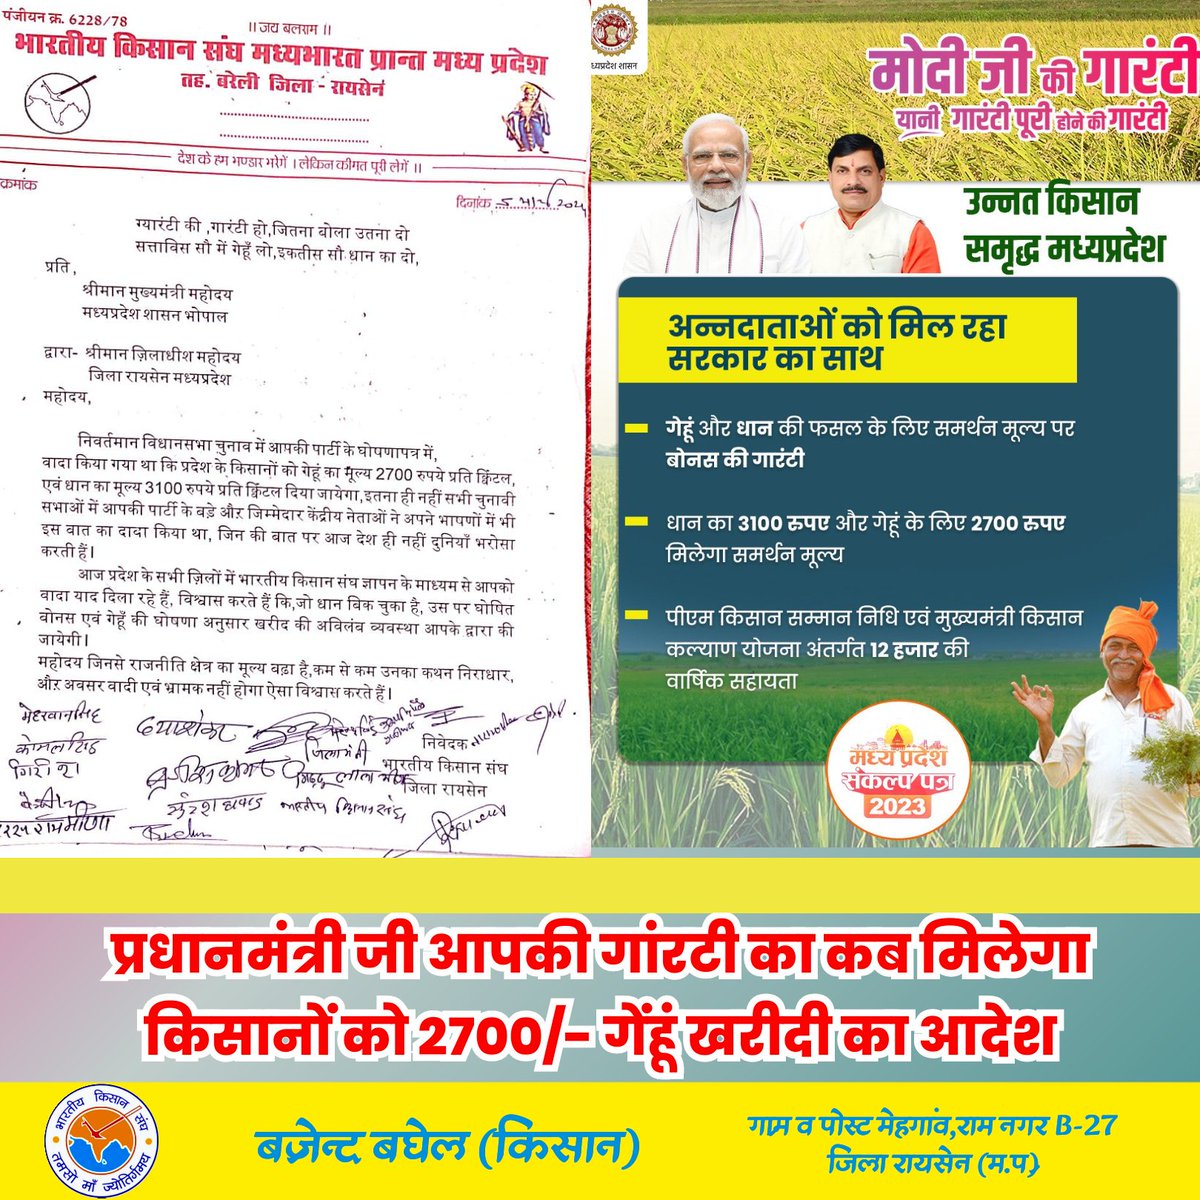 आदरणीय @narendramodi ji @AmitShah ji आज दिनांक तक किसानों को 2700/ खरीदी के आदेश जारी नही किए गये आपके समक्ष विधानसभा चुनाव में घोषणा की गई थी @CMMadhyaPradesh @CollectorRaisen @BJP4MP @BJP4India @AgriGoI